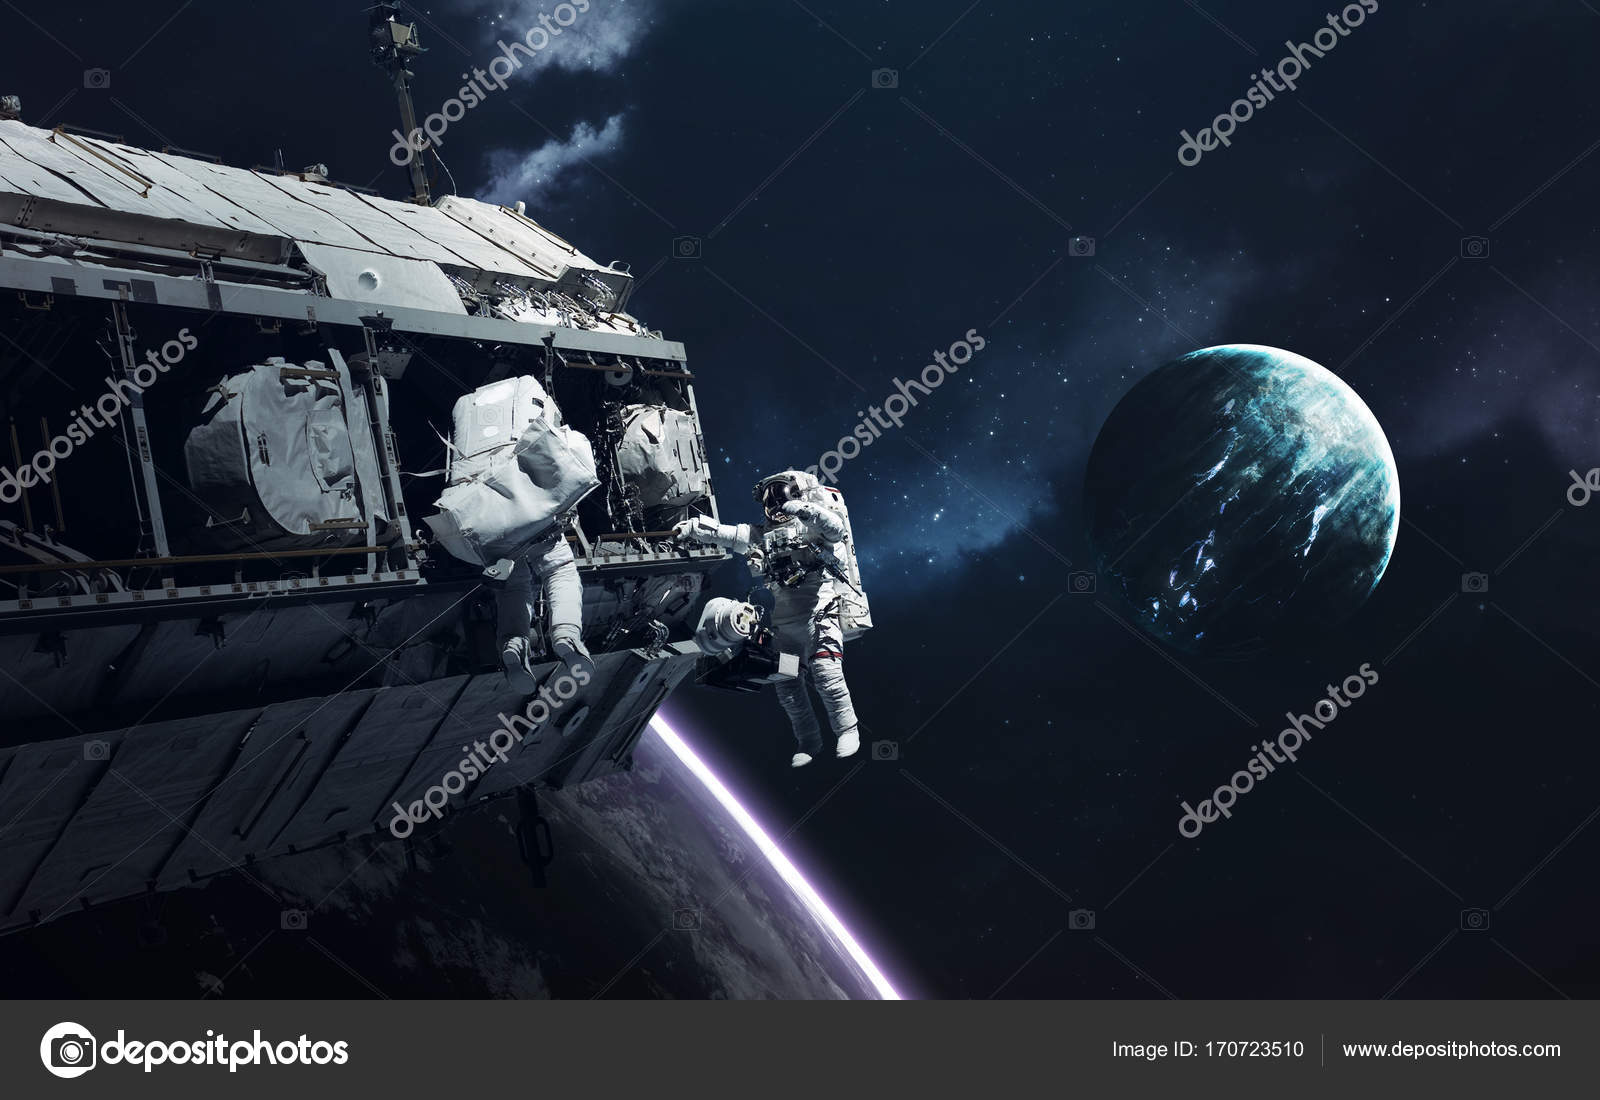 g zel fondo de pantalla,espacio exterior,estación espacial,astronave,objeto astronómico,espacio